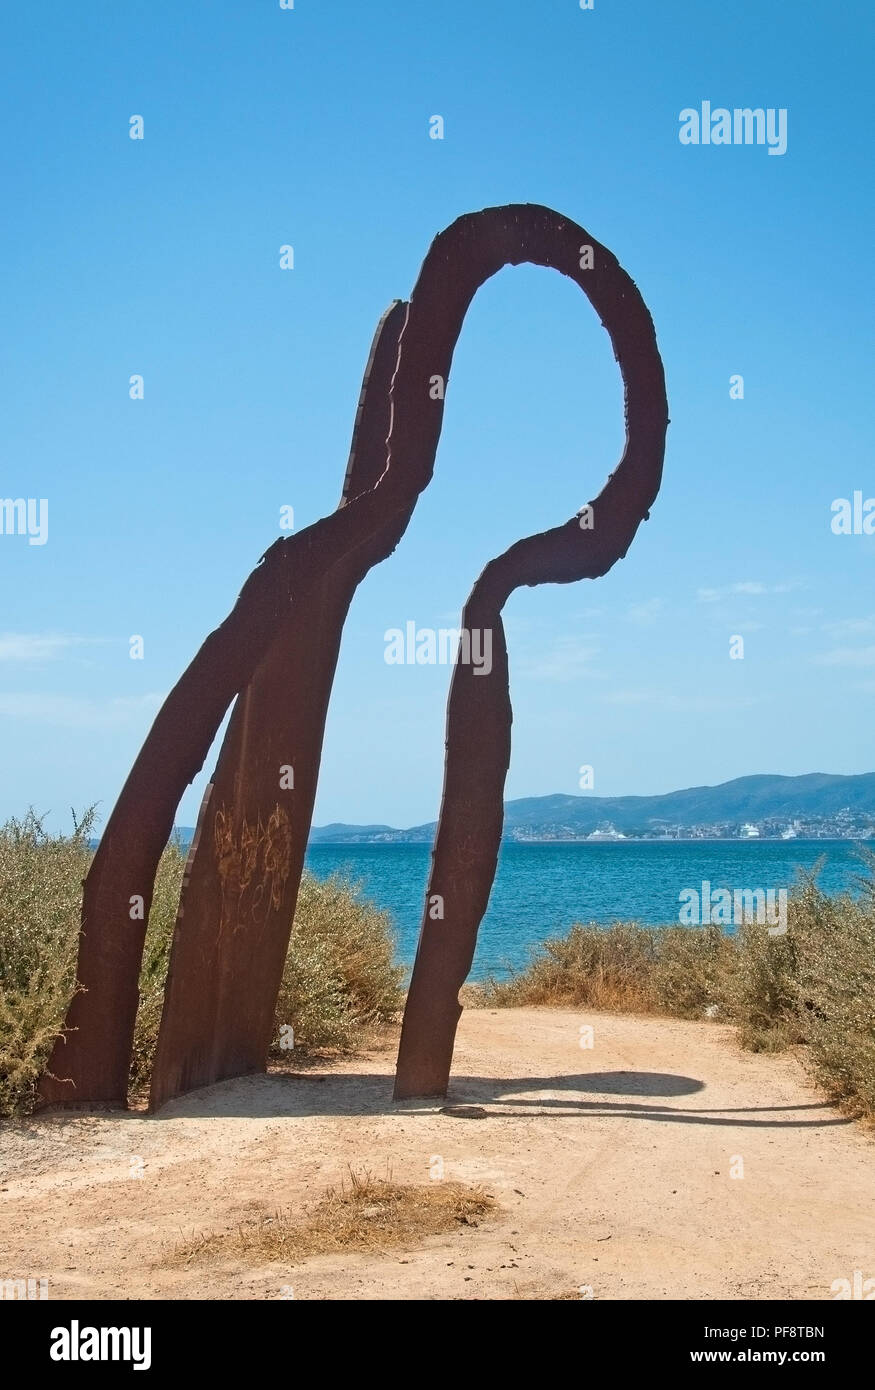 PALMA DE MALLORCA, España - 21 de julio, 2012: escultura en hierro oxidado Es Carnatge en un día soleado de verano el 21 de julio de 2012 en Mallorca, España. Foto de stock